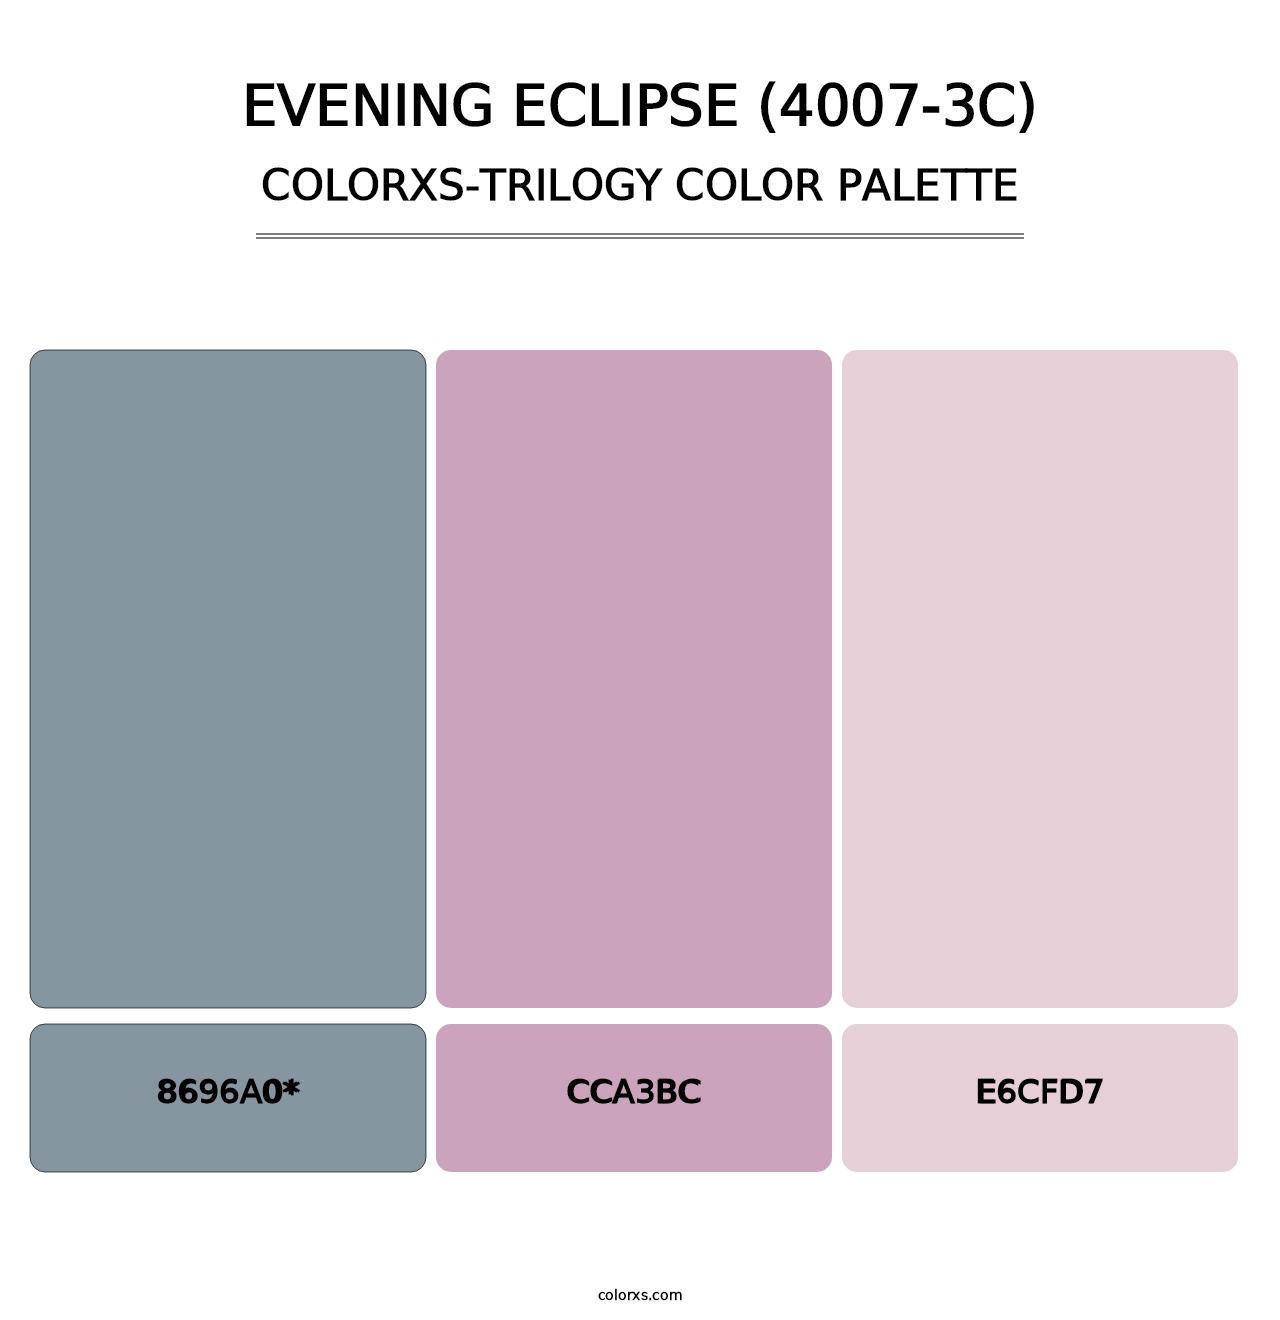 Evening Eclipse (4007-3C) - Colorxs Trilogy Palette